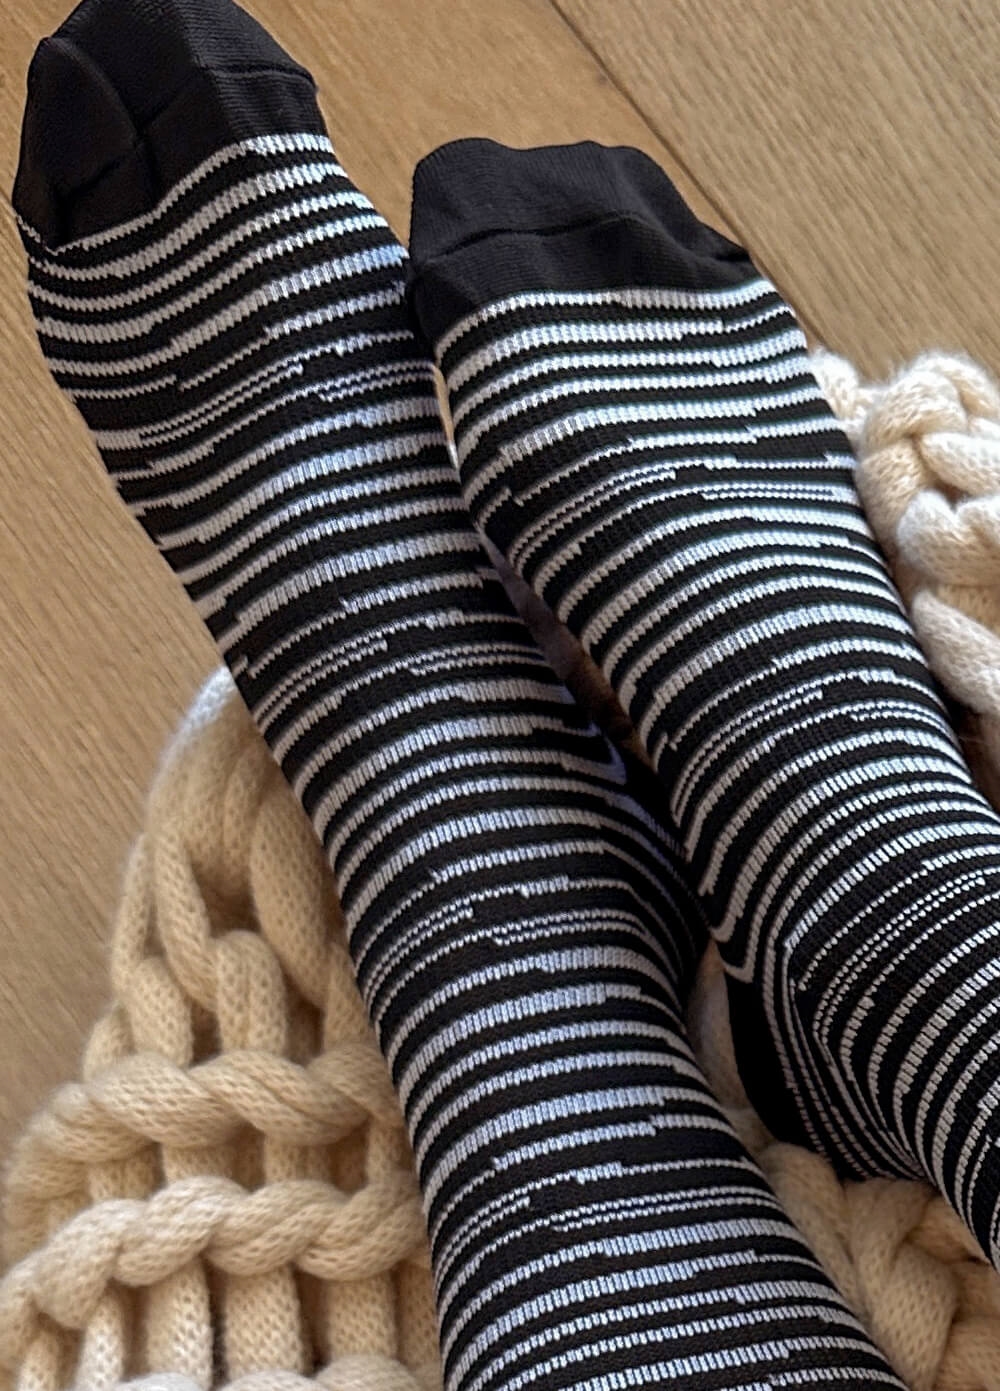 Mama Sox - Delight Maternity Compression Socks in Black Marle Stripe